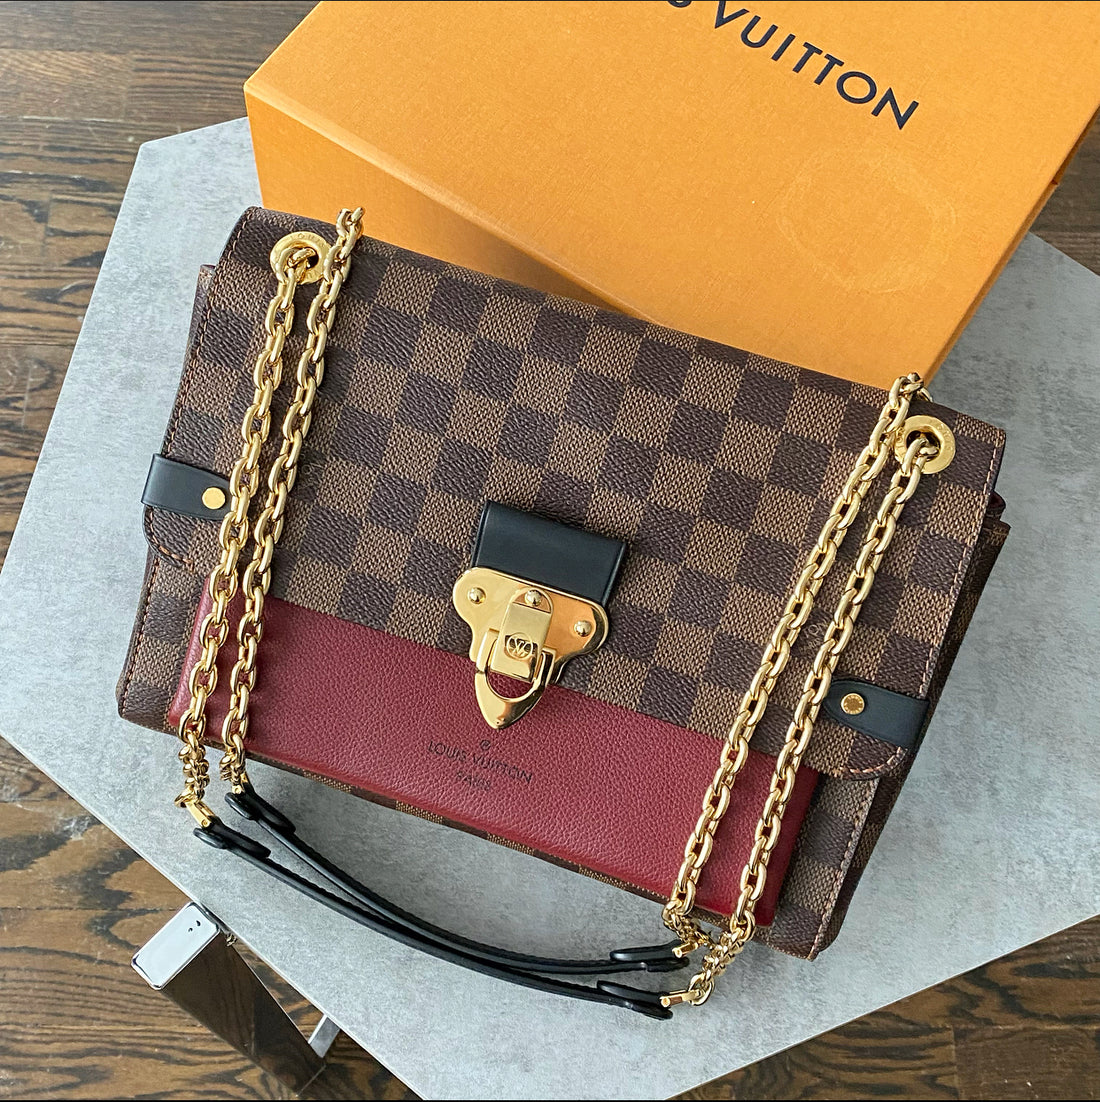 Authenticated used Louis Vuitton Monogram Vavin PM 2way Bag M51172 Handbag with Shoulder Strap LV 0209 Louis Vuitton, Adult Unisex, Size: (HxWxD)